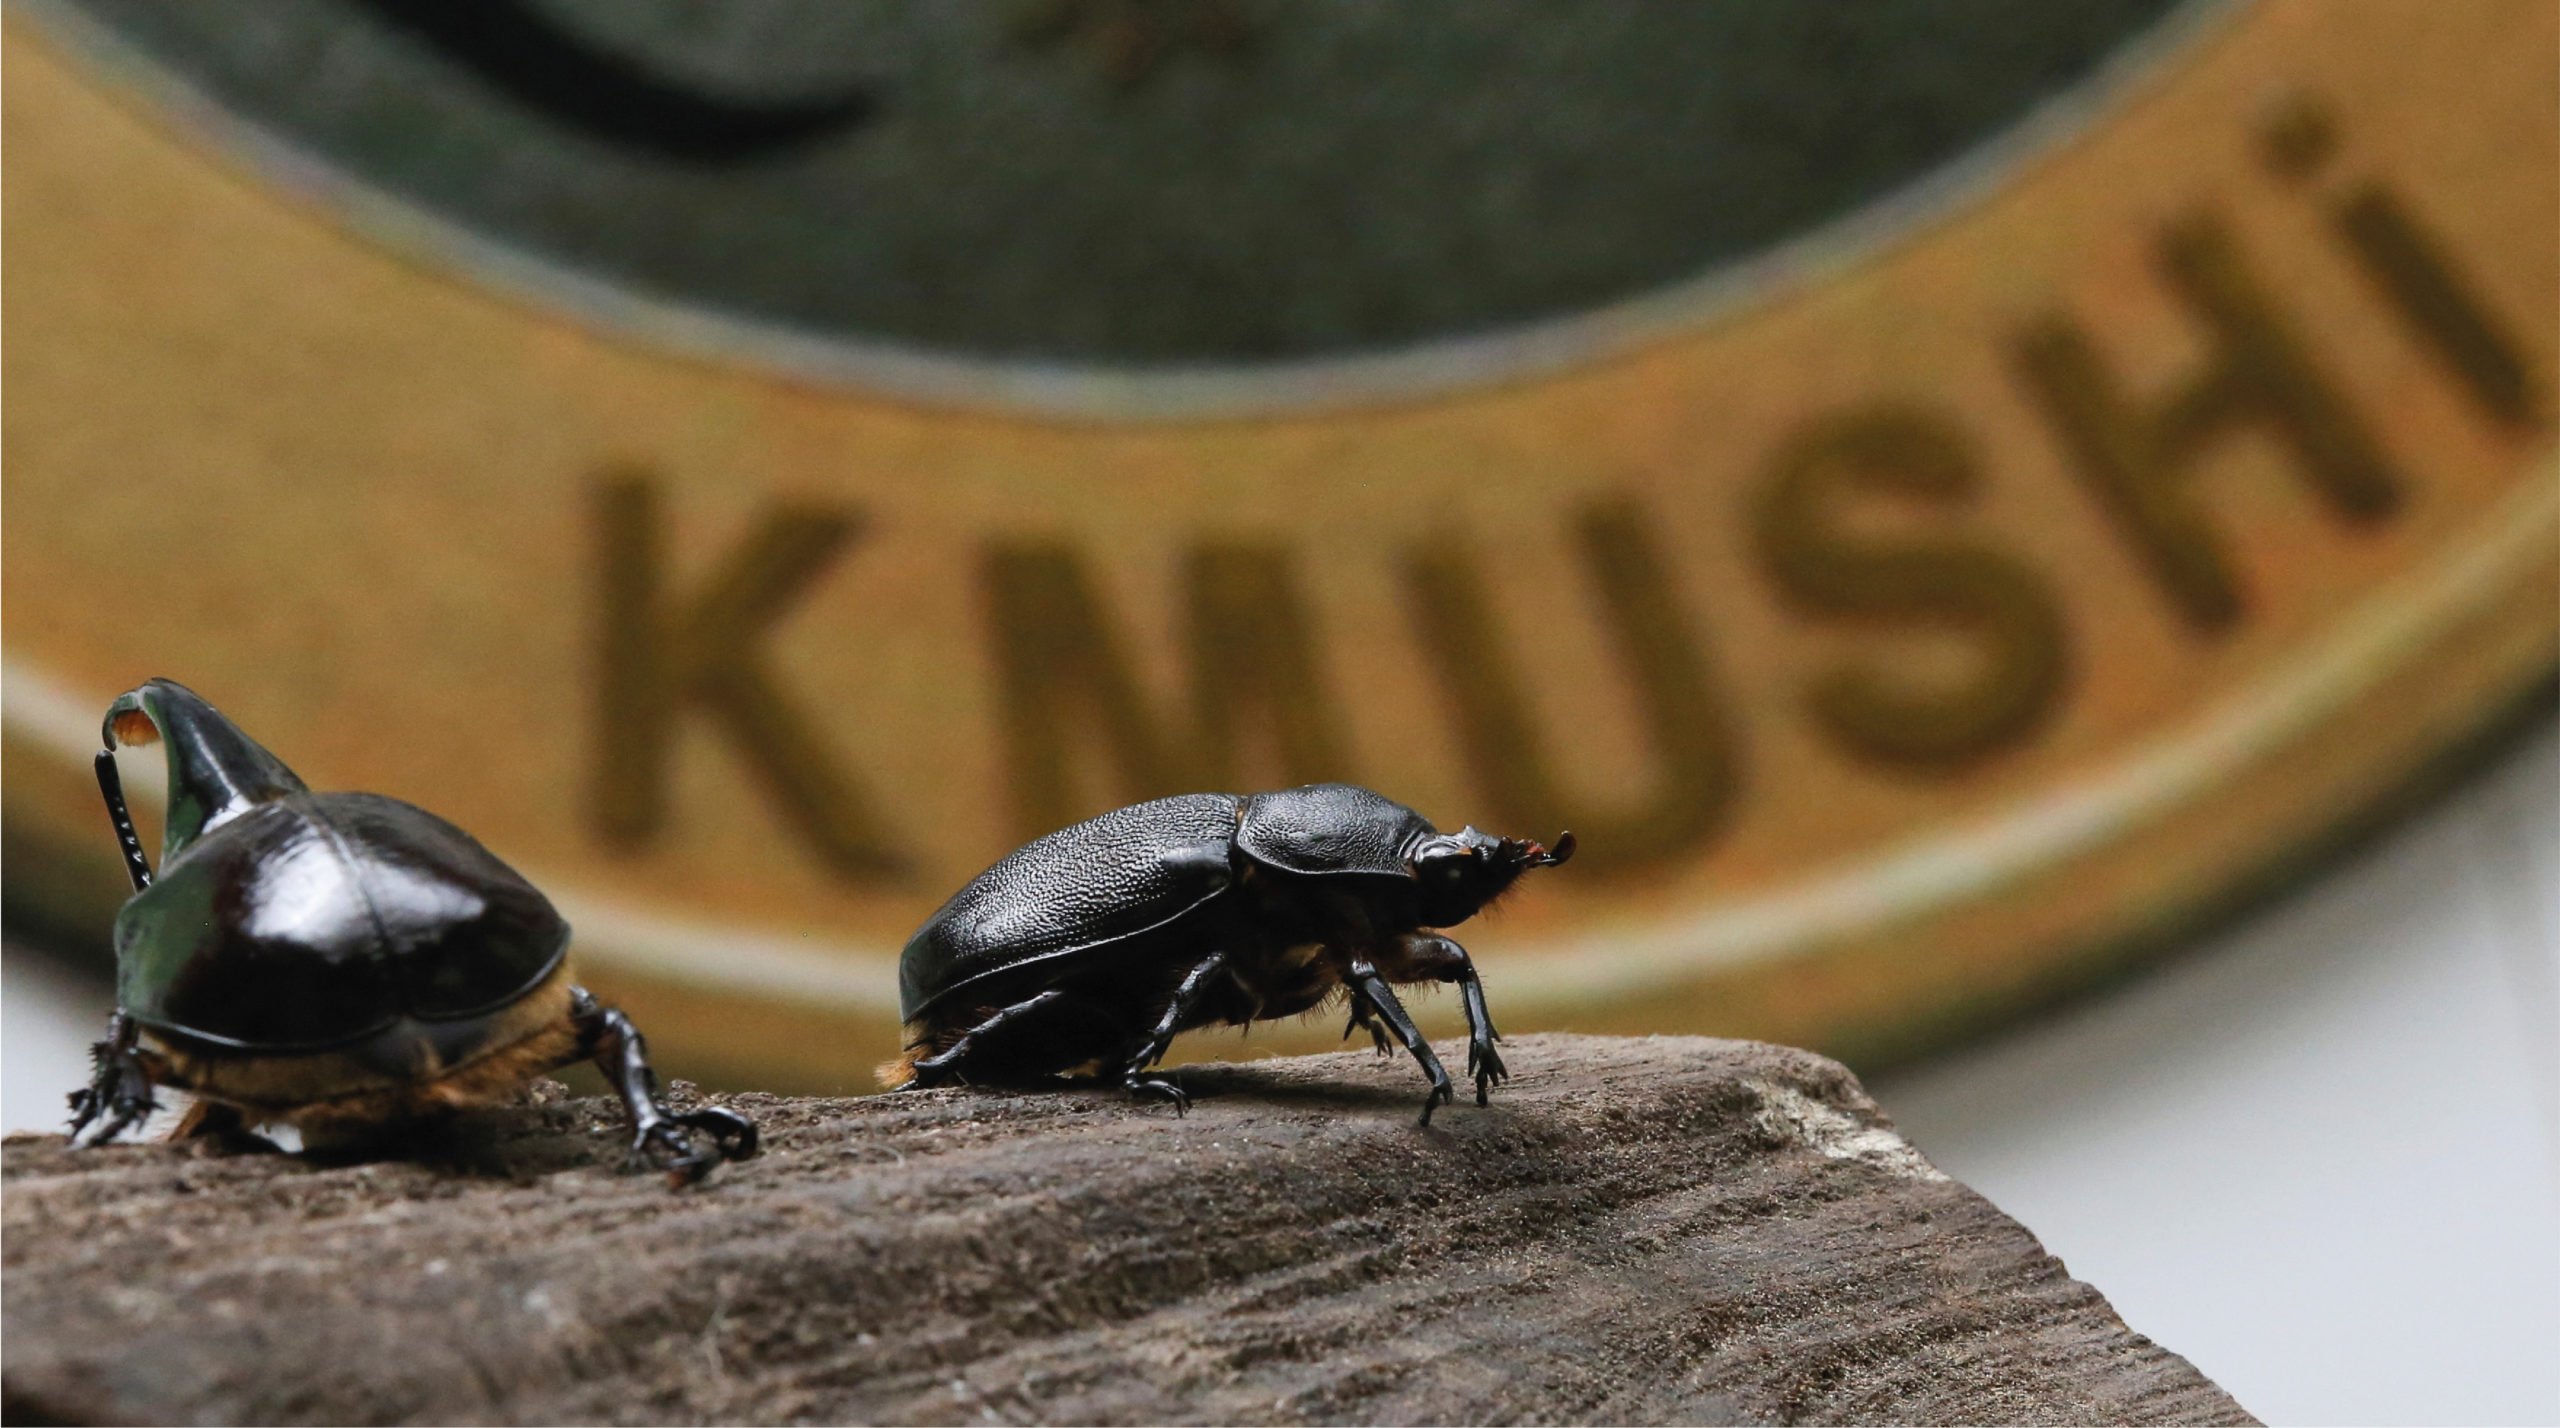 Escarabajos colombianos llegan a Japón como mascotas impulsados por esta criptomoneda